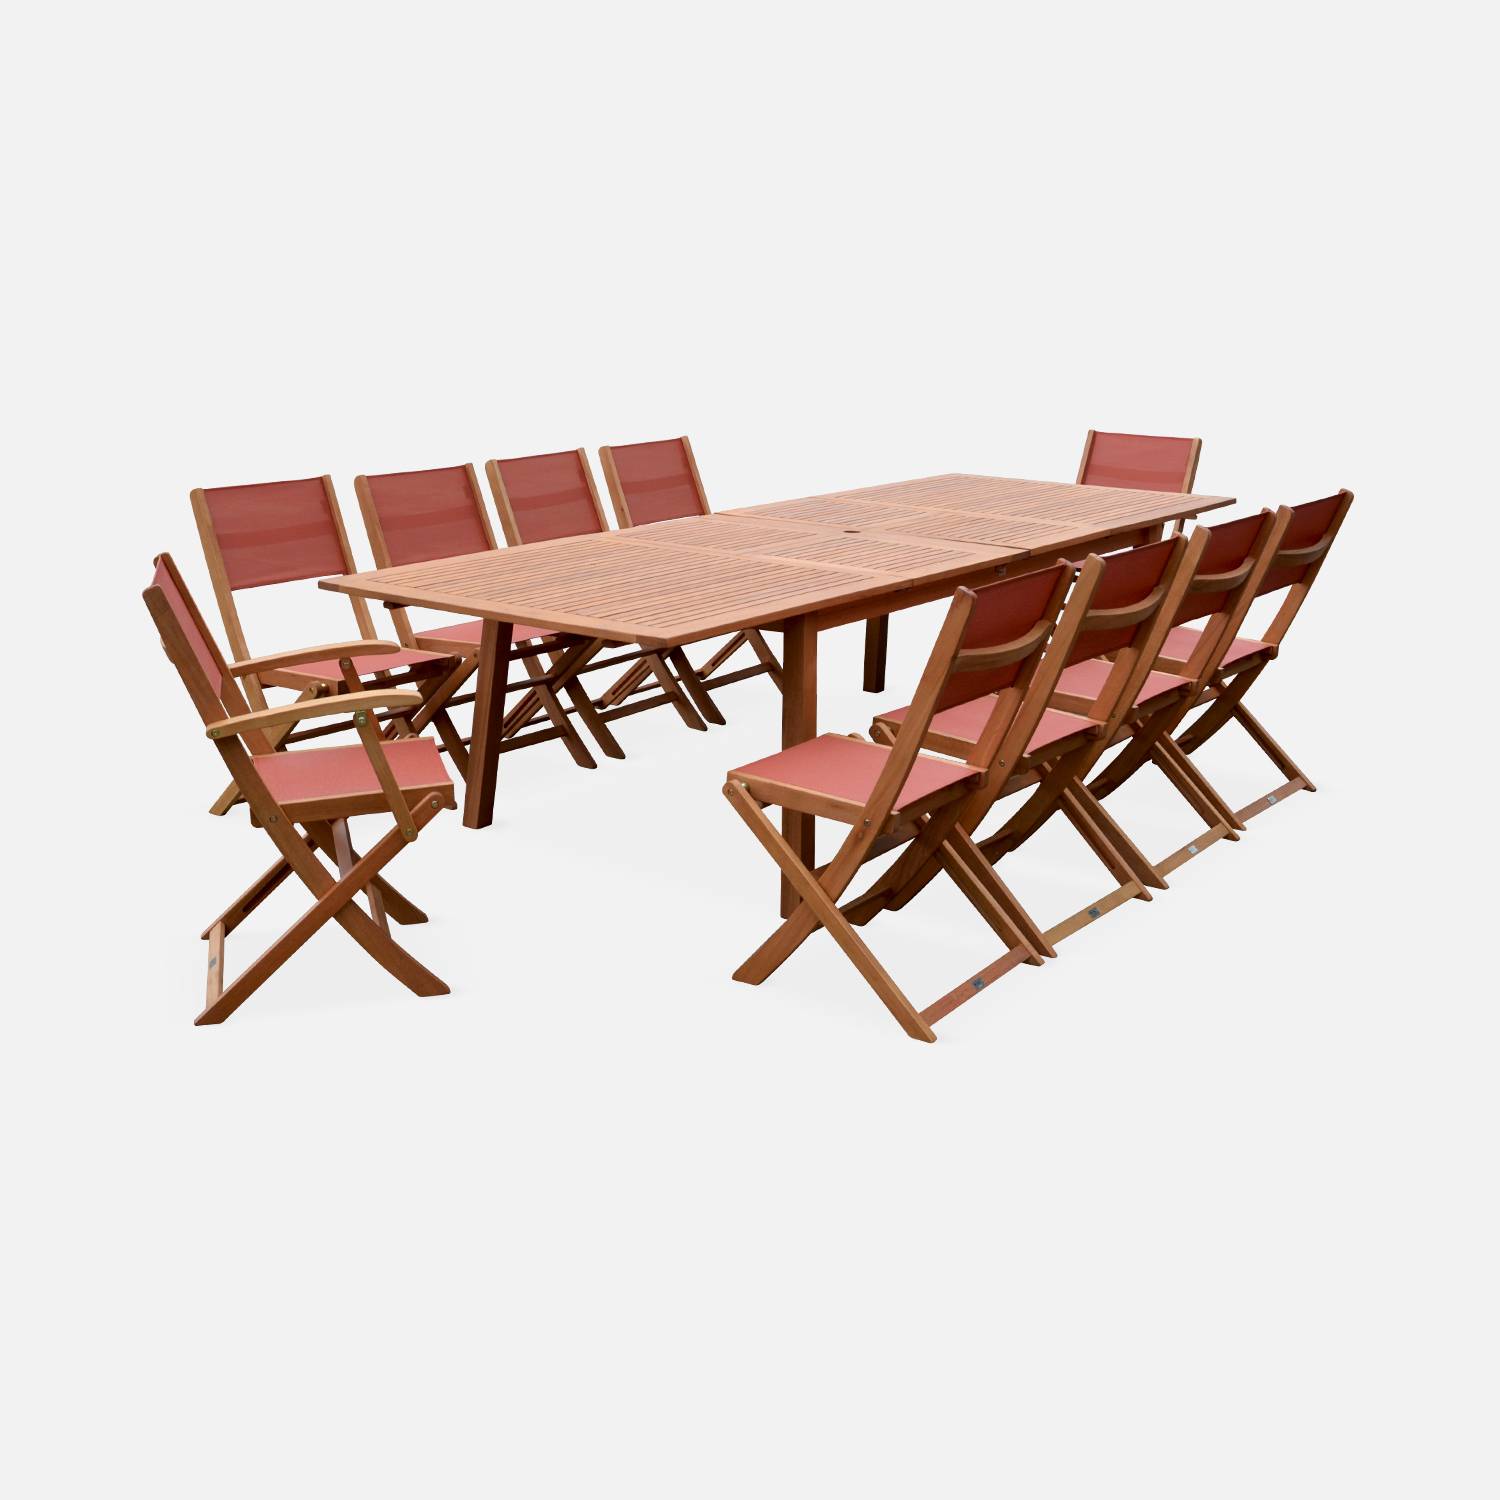 Ausziehbare Gartenmöbel aus Holz - Almeria Tisch 200/250/300cm mit 2 Verlängerungen, 2 Sesseln und 8 Stühlen, aus geöltem FSC Eukalyptusholz und Terra-Cotta Textilene Photo2